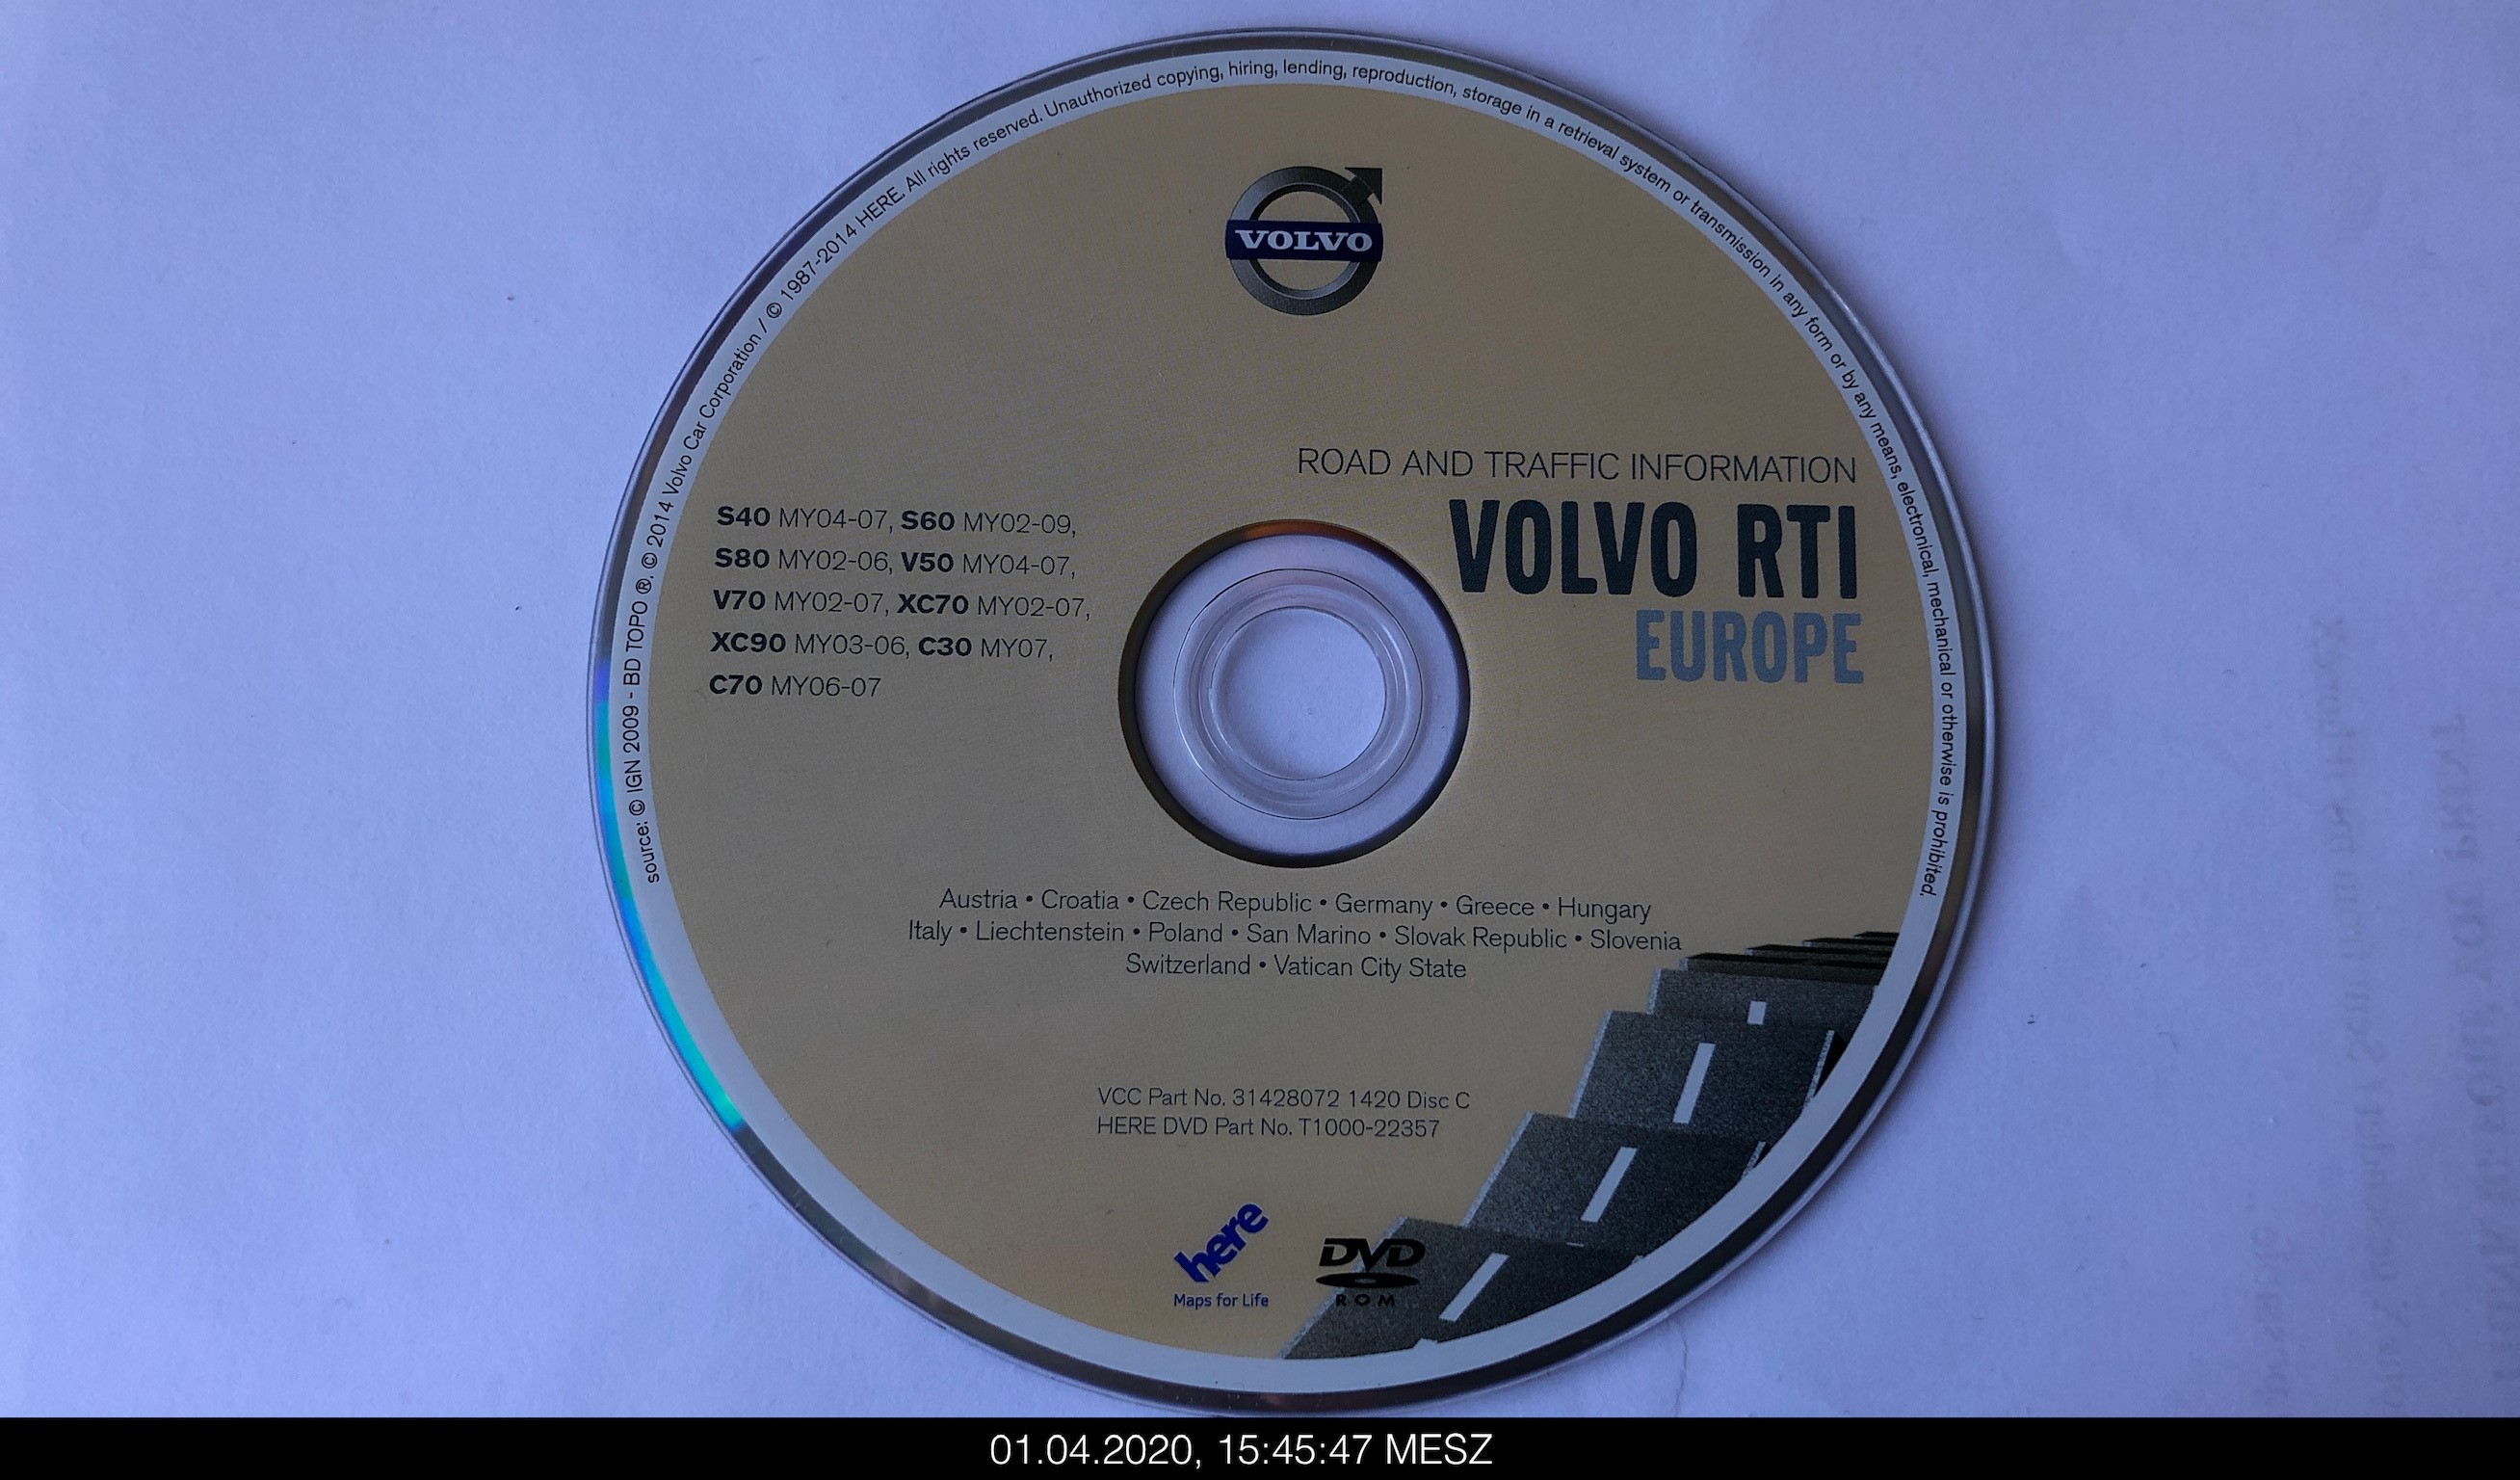 VOLVO_RTI_Europe_Disc_C_2014.jpg